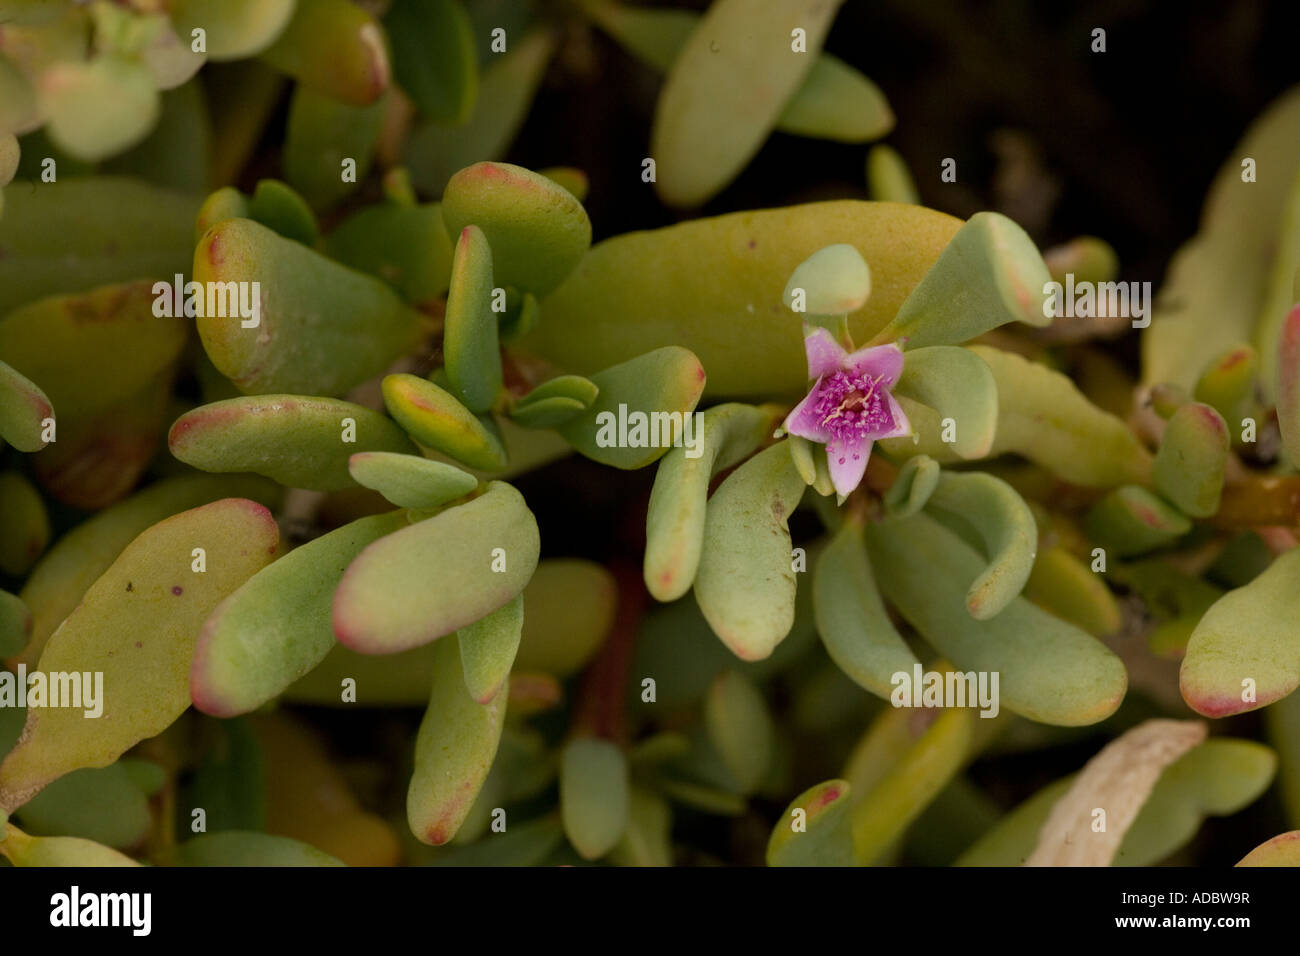 Sea purslane (Sesuvium portulacastrum) in flower, close-up Stock Photo